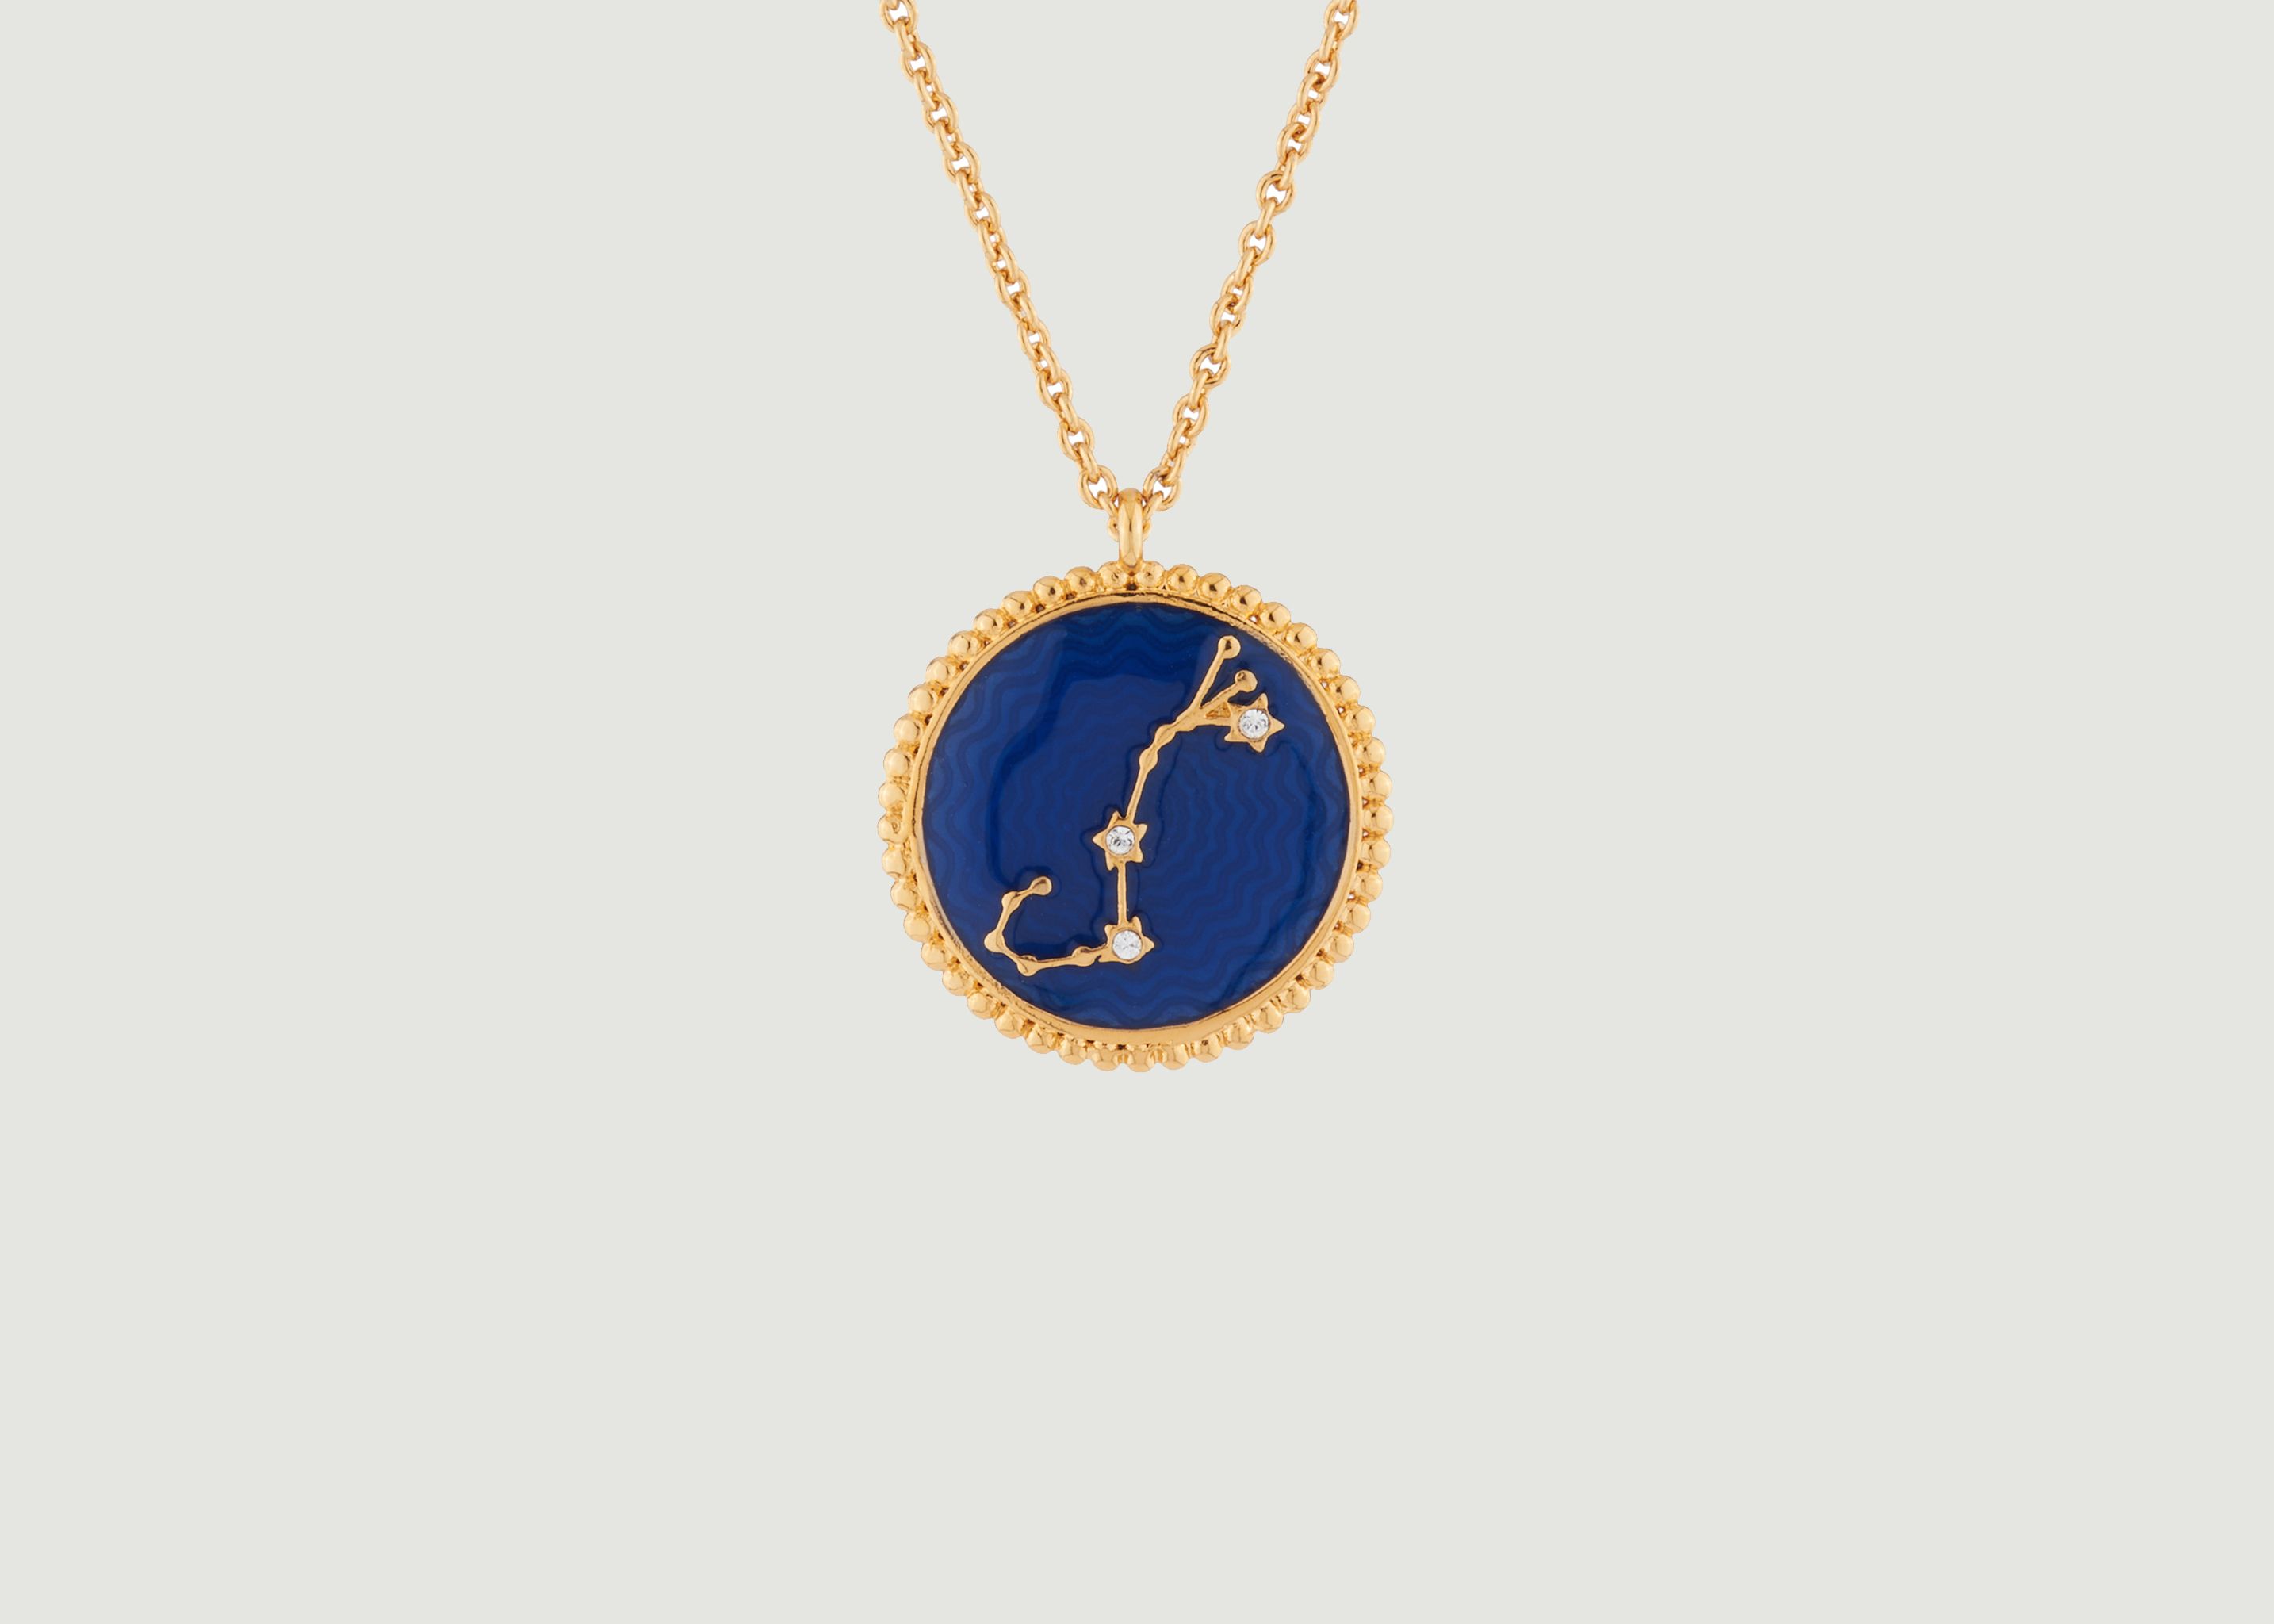 Scorpio astrological sign necklace with pendant - Les Néréides